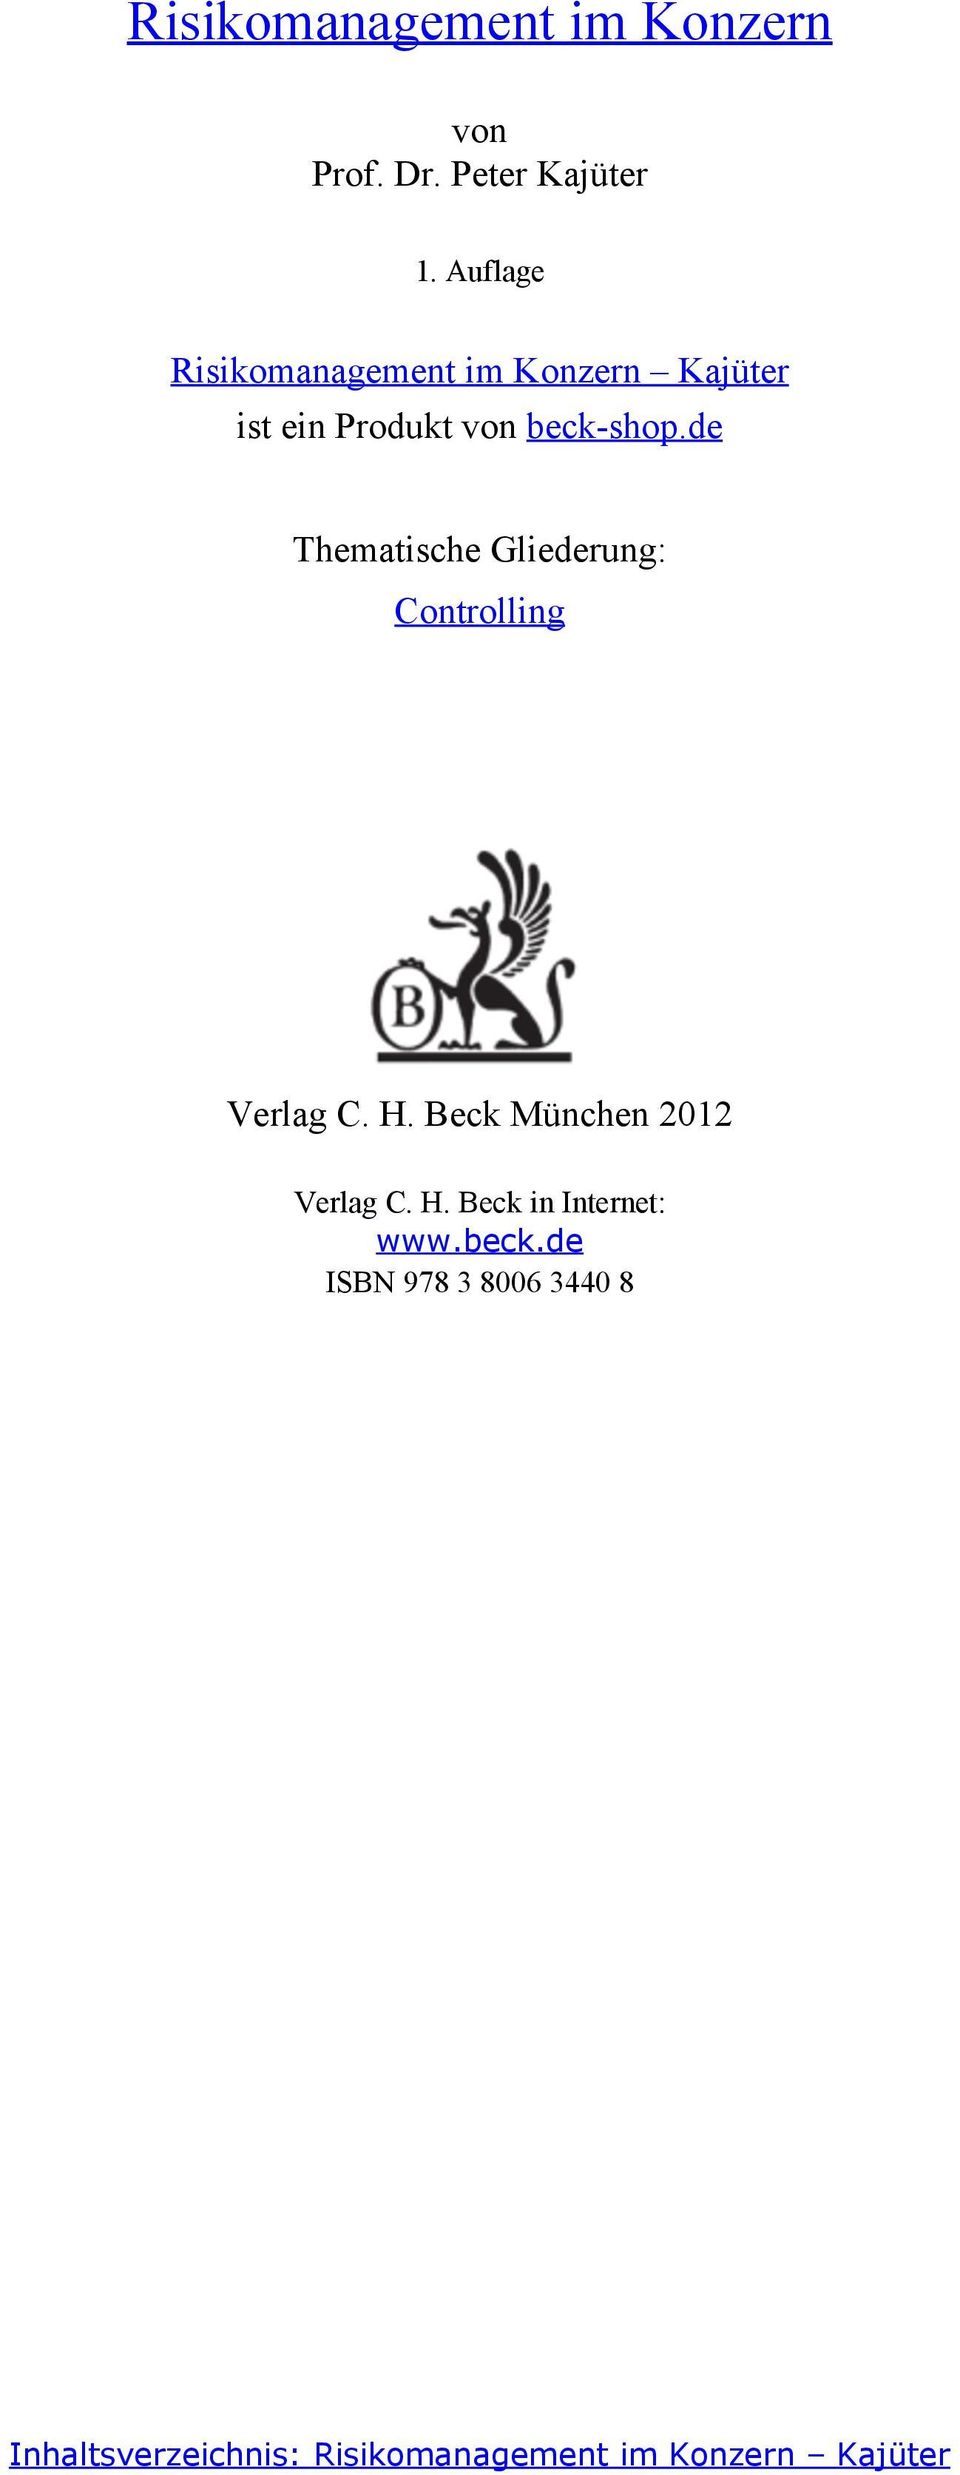 Gliederung: Controlling Verlag C. H. Beck München 0 Verlag C. H. Beck in Internet: www.